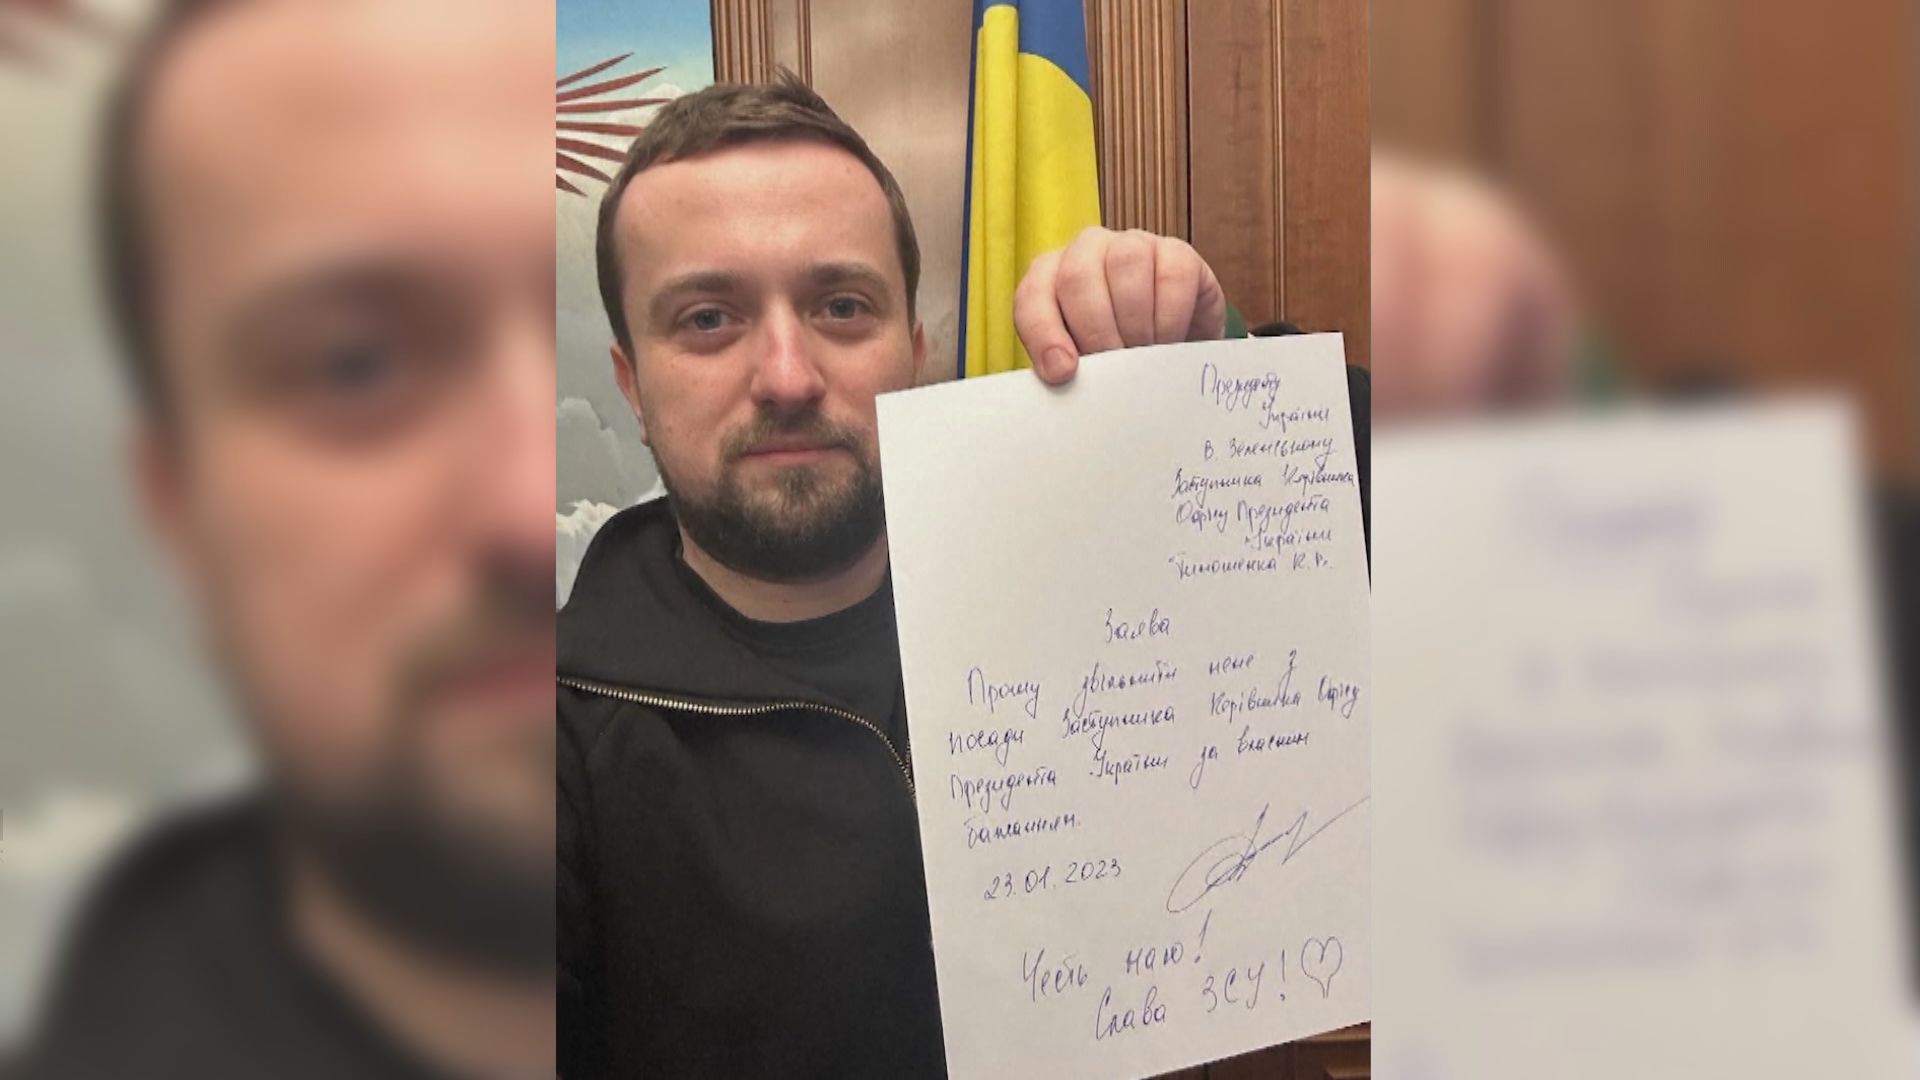 烏克蘭多名官員疑涉貪污等醜聞辭職